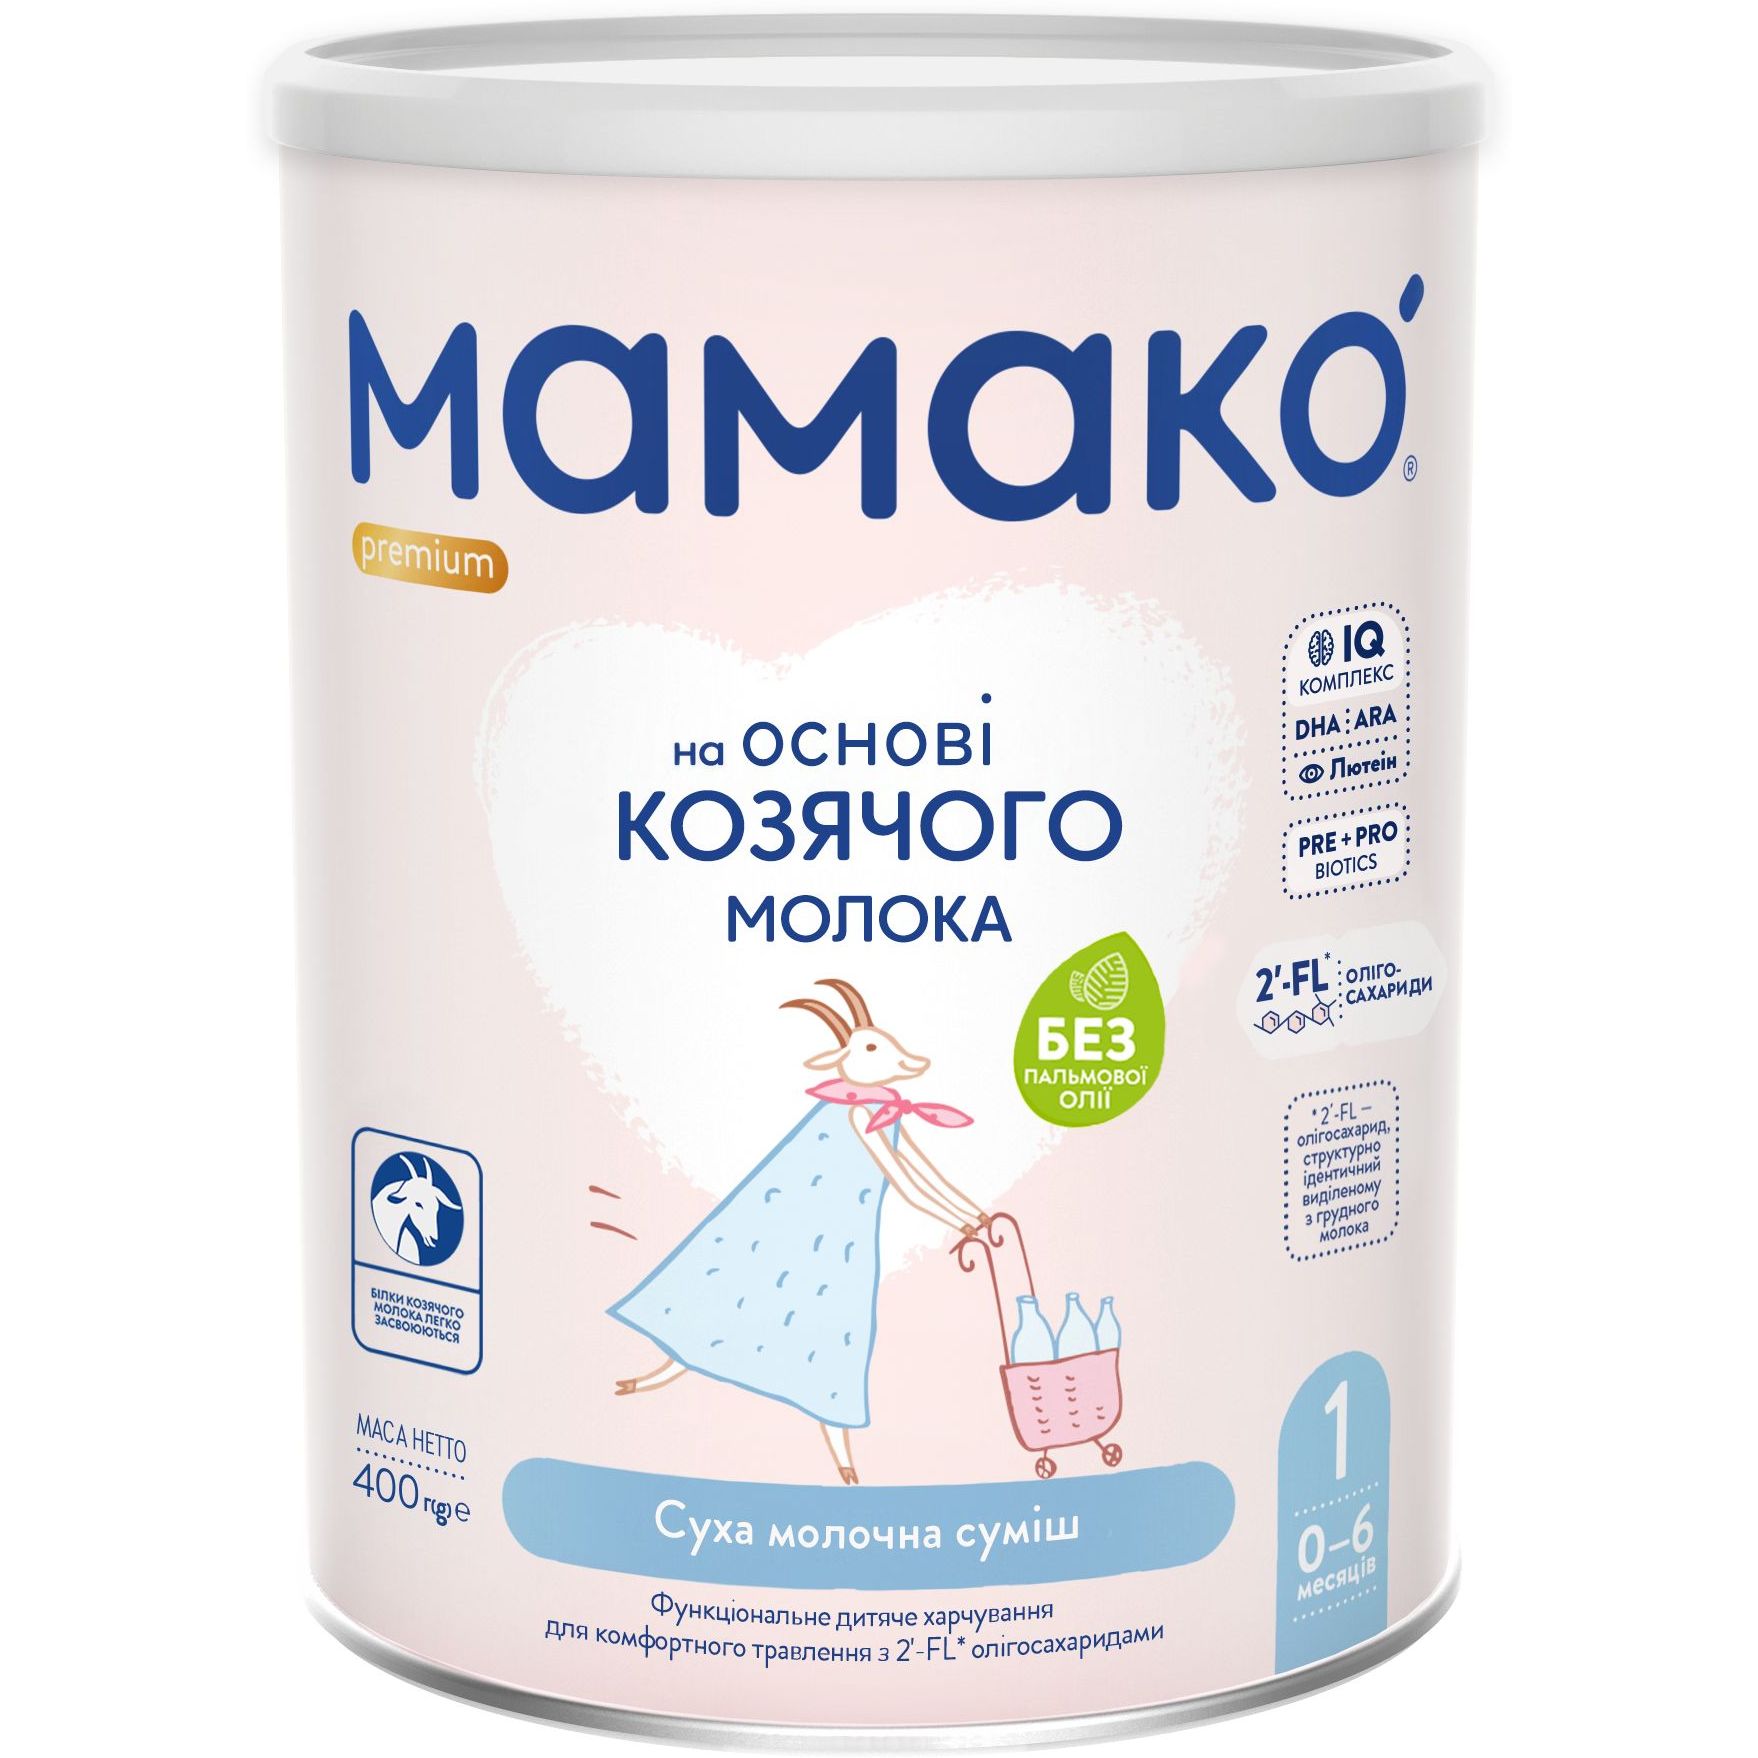 Суха молочна суміш МАМАКО Premium 1, 400 г - фото 1